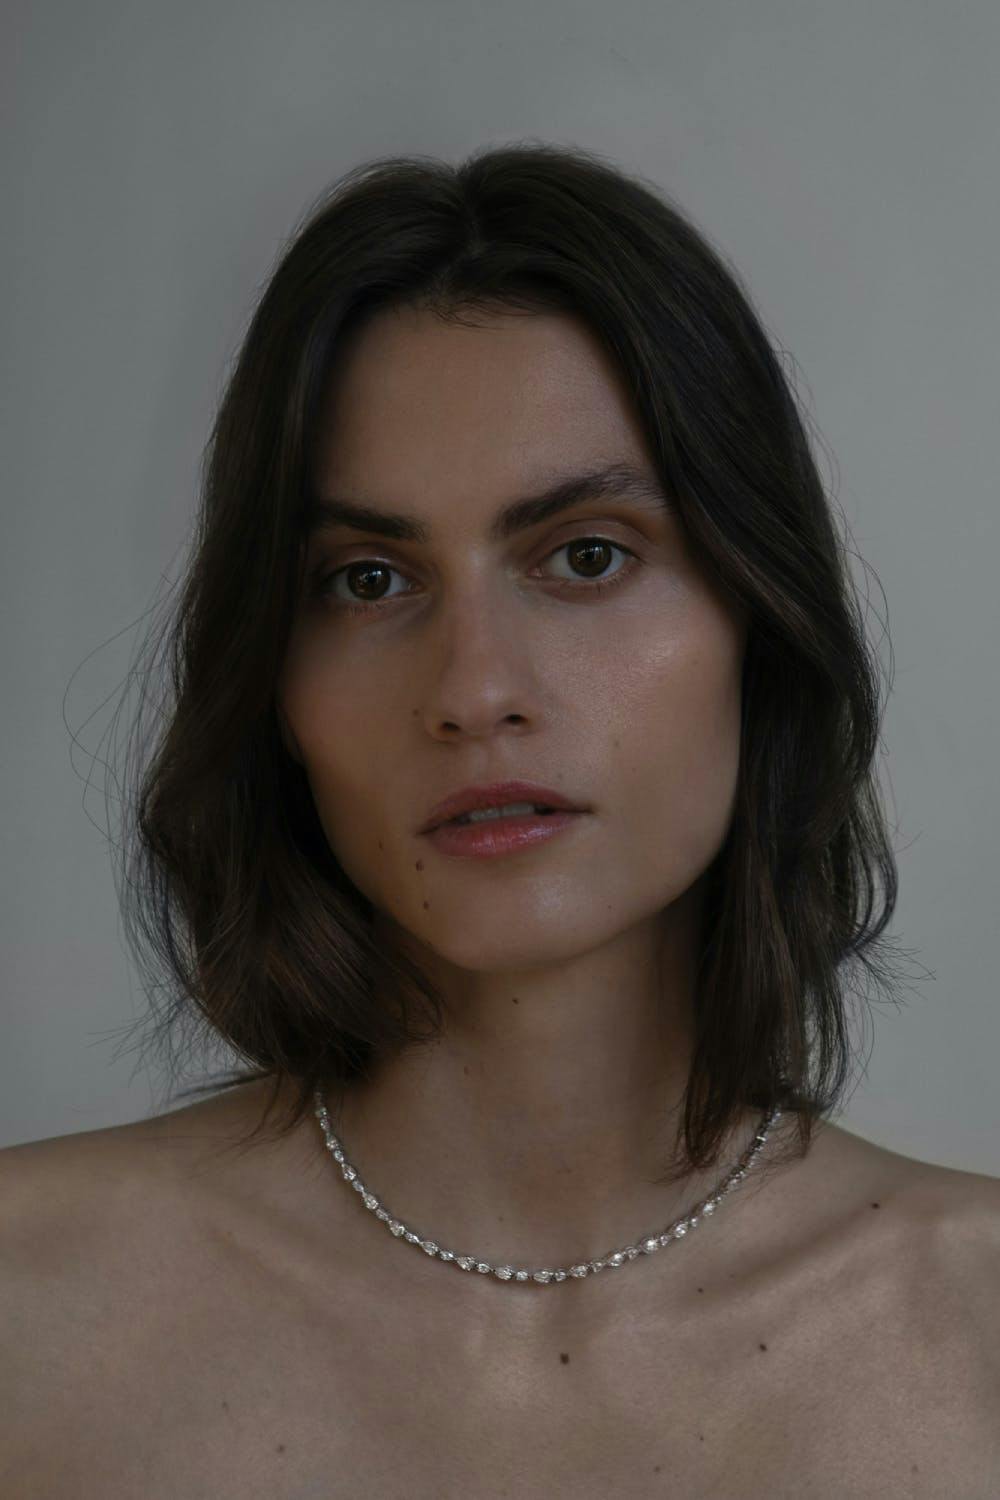 face head person portrait accessories adult female woman neck necklace